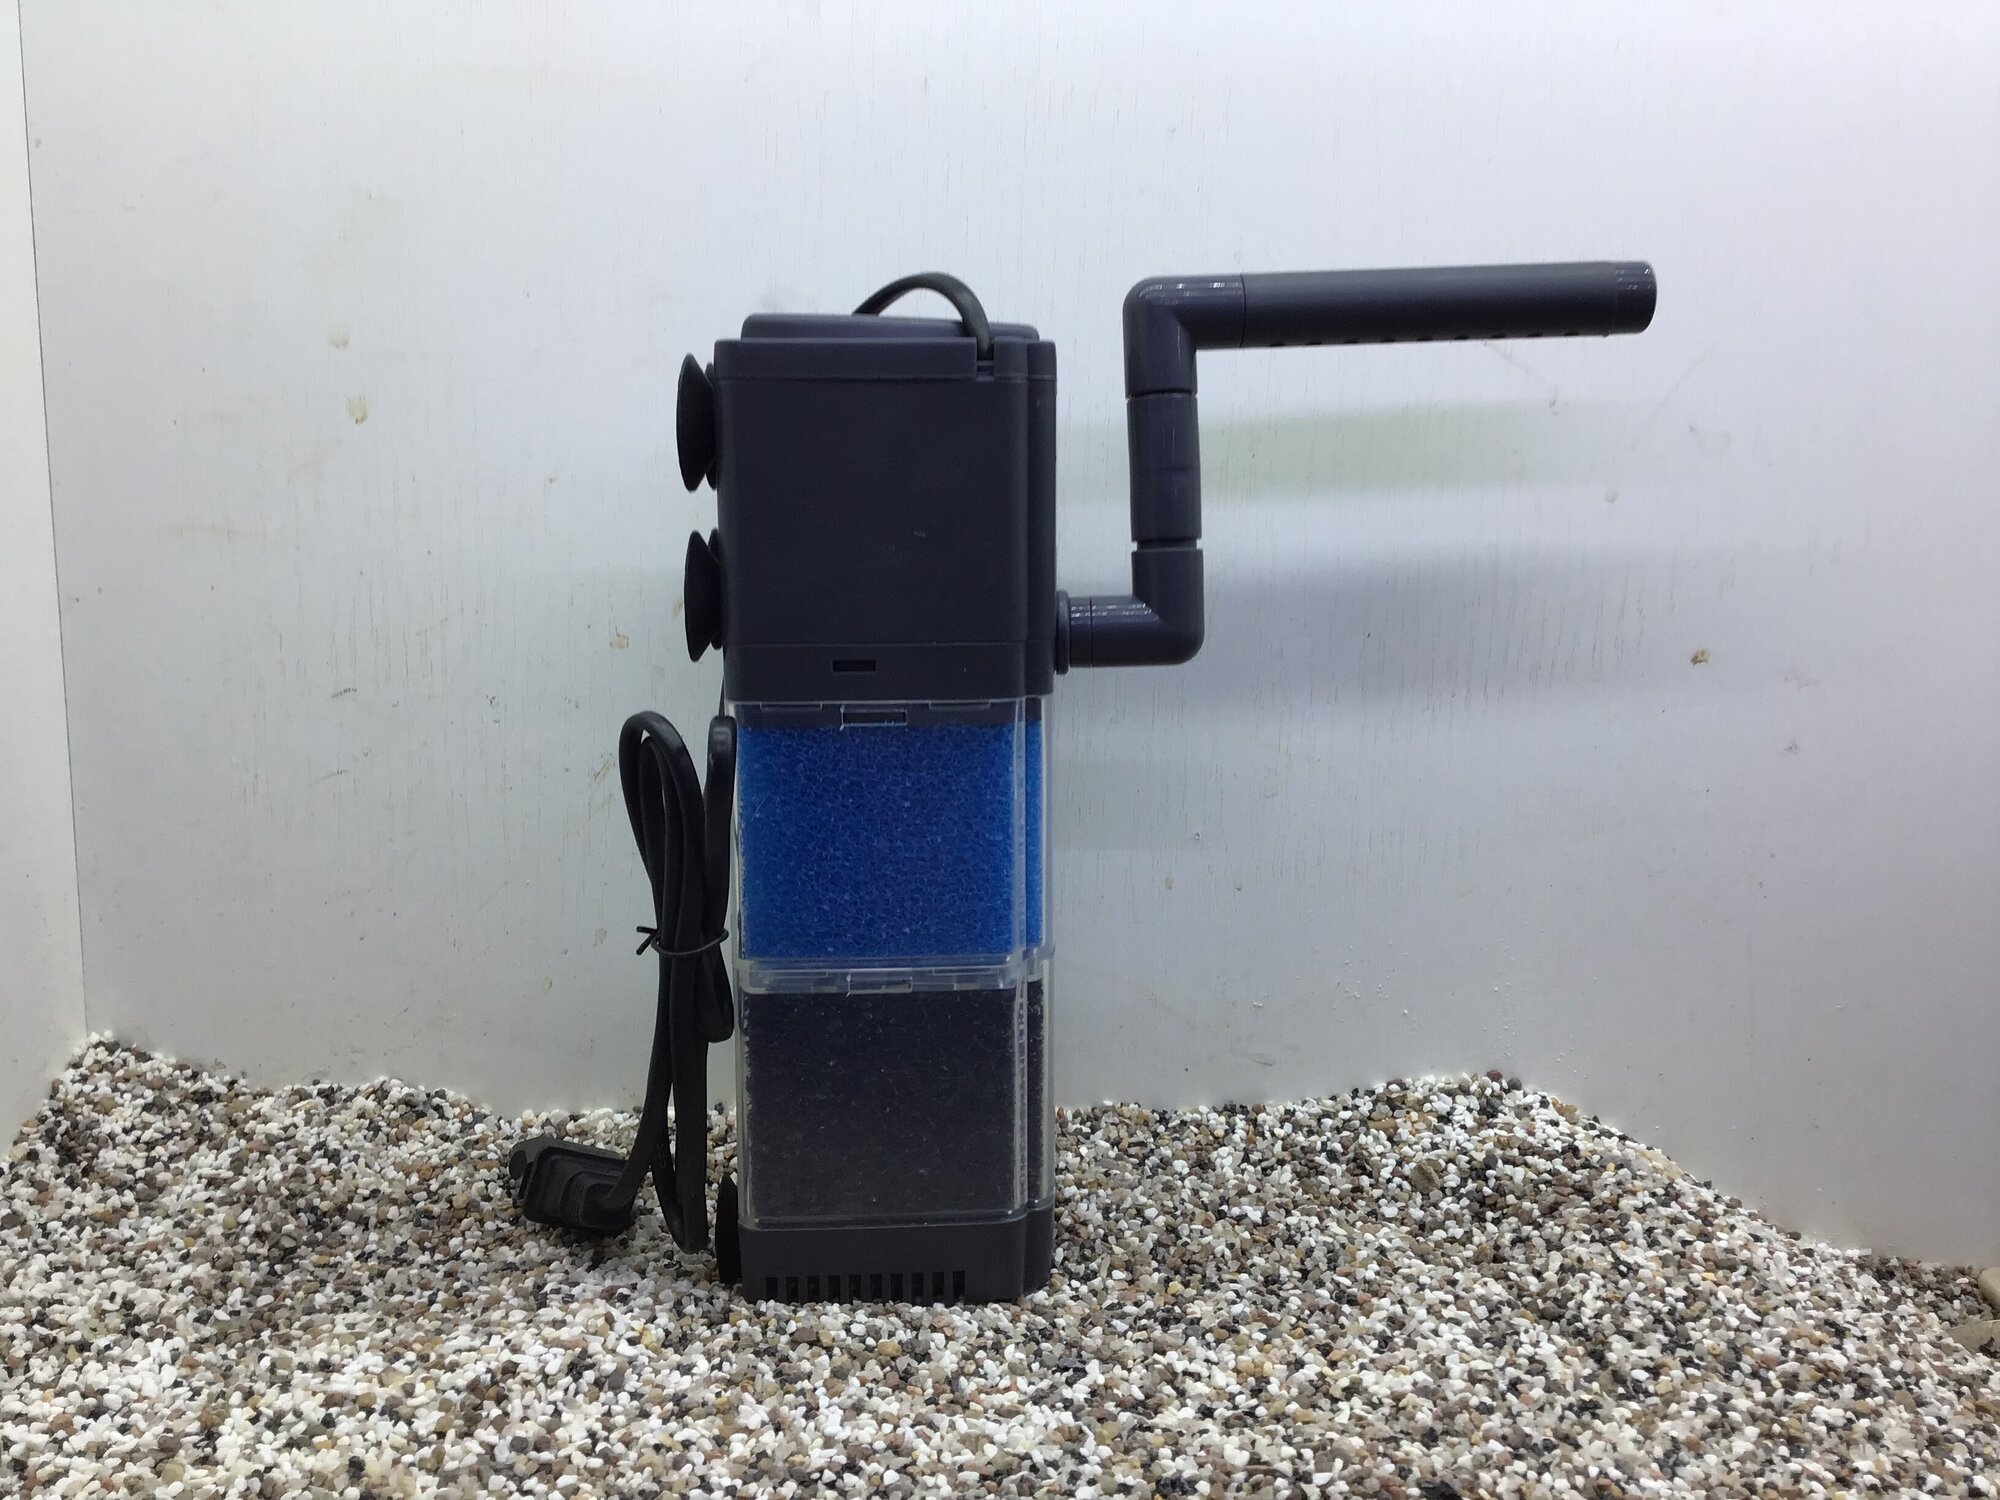 Фильтр внутренний для аквариума FH-1202 12 вт, 880 л/ч